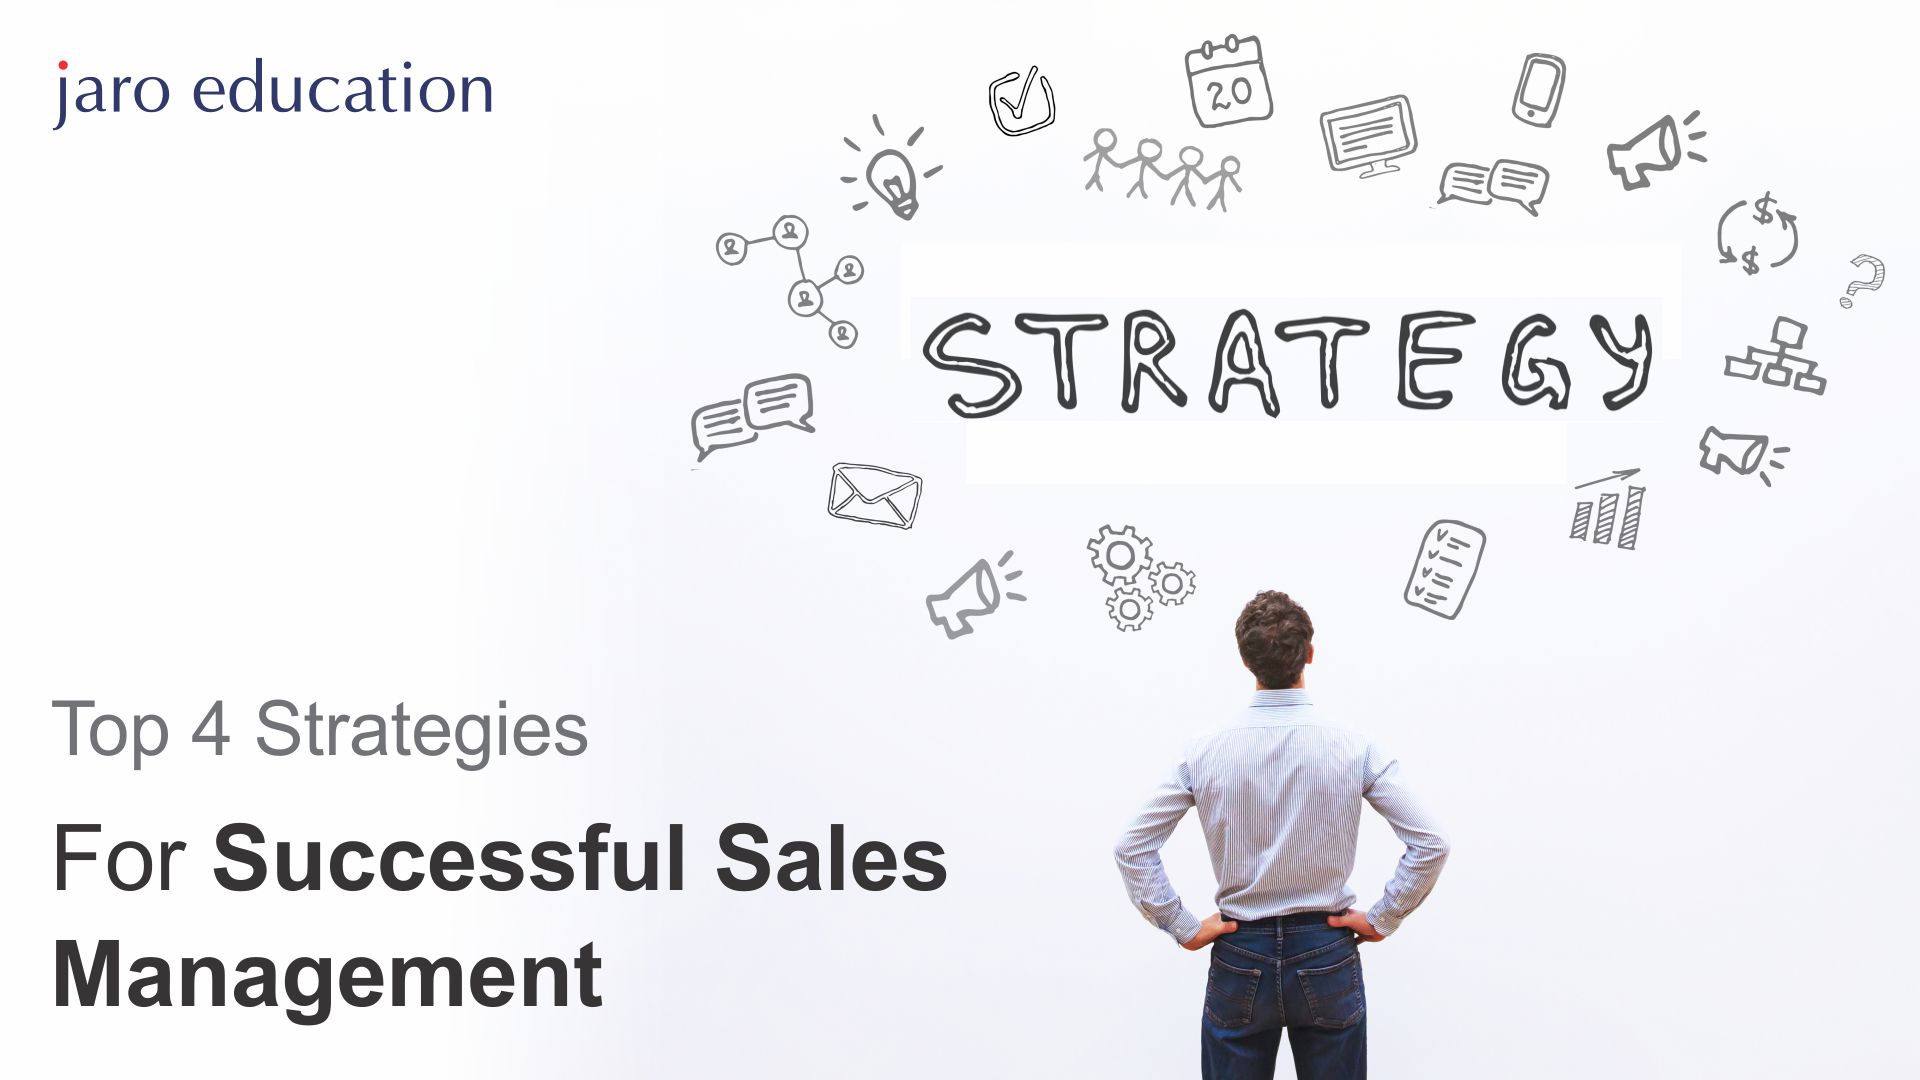 Strategic Sales Management And New Age Marketing - IIM Kozhikode